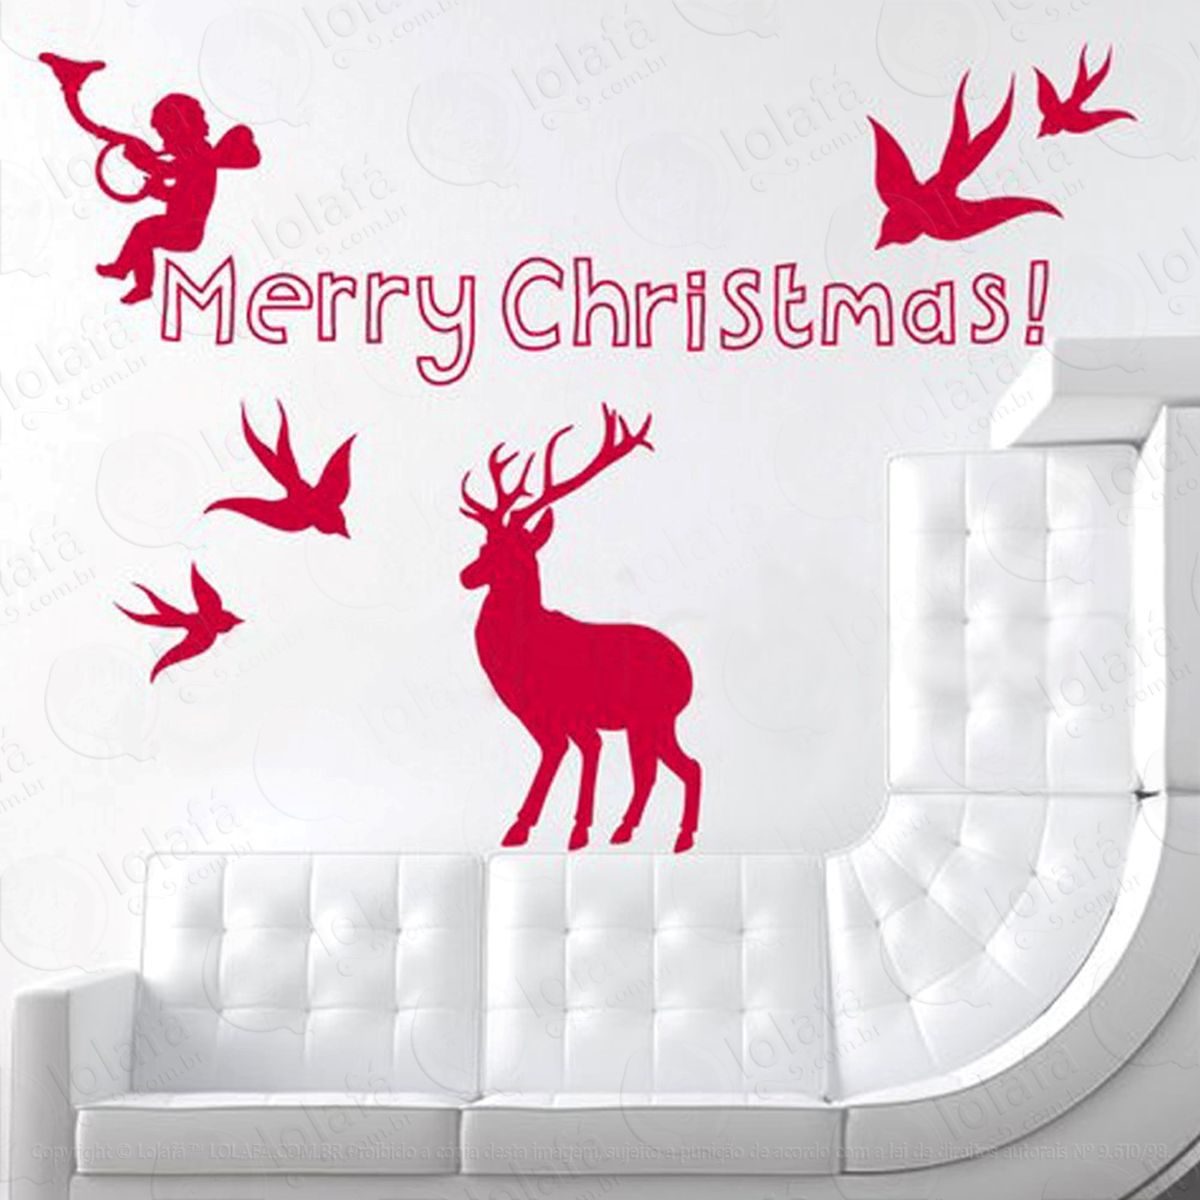 anjo e rena adesivo de natal para vitrine, parede, porta de vidro - decoração natalina mod:143